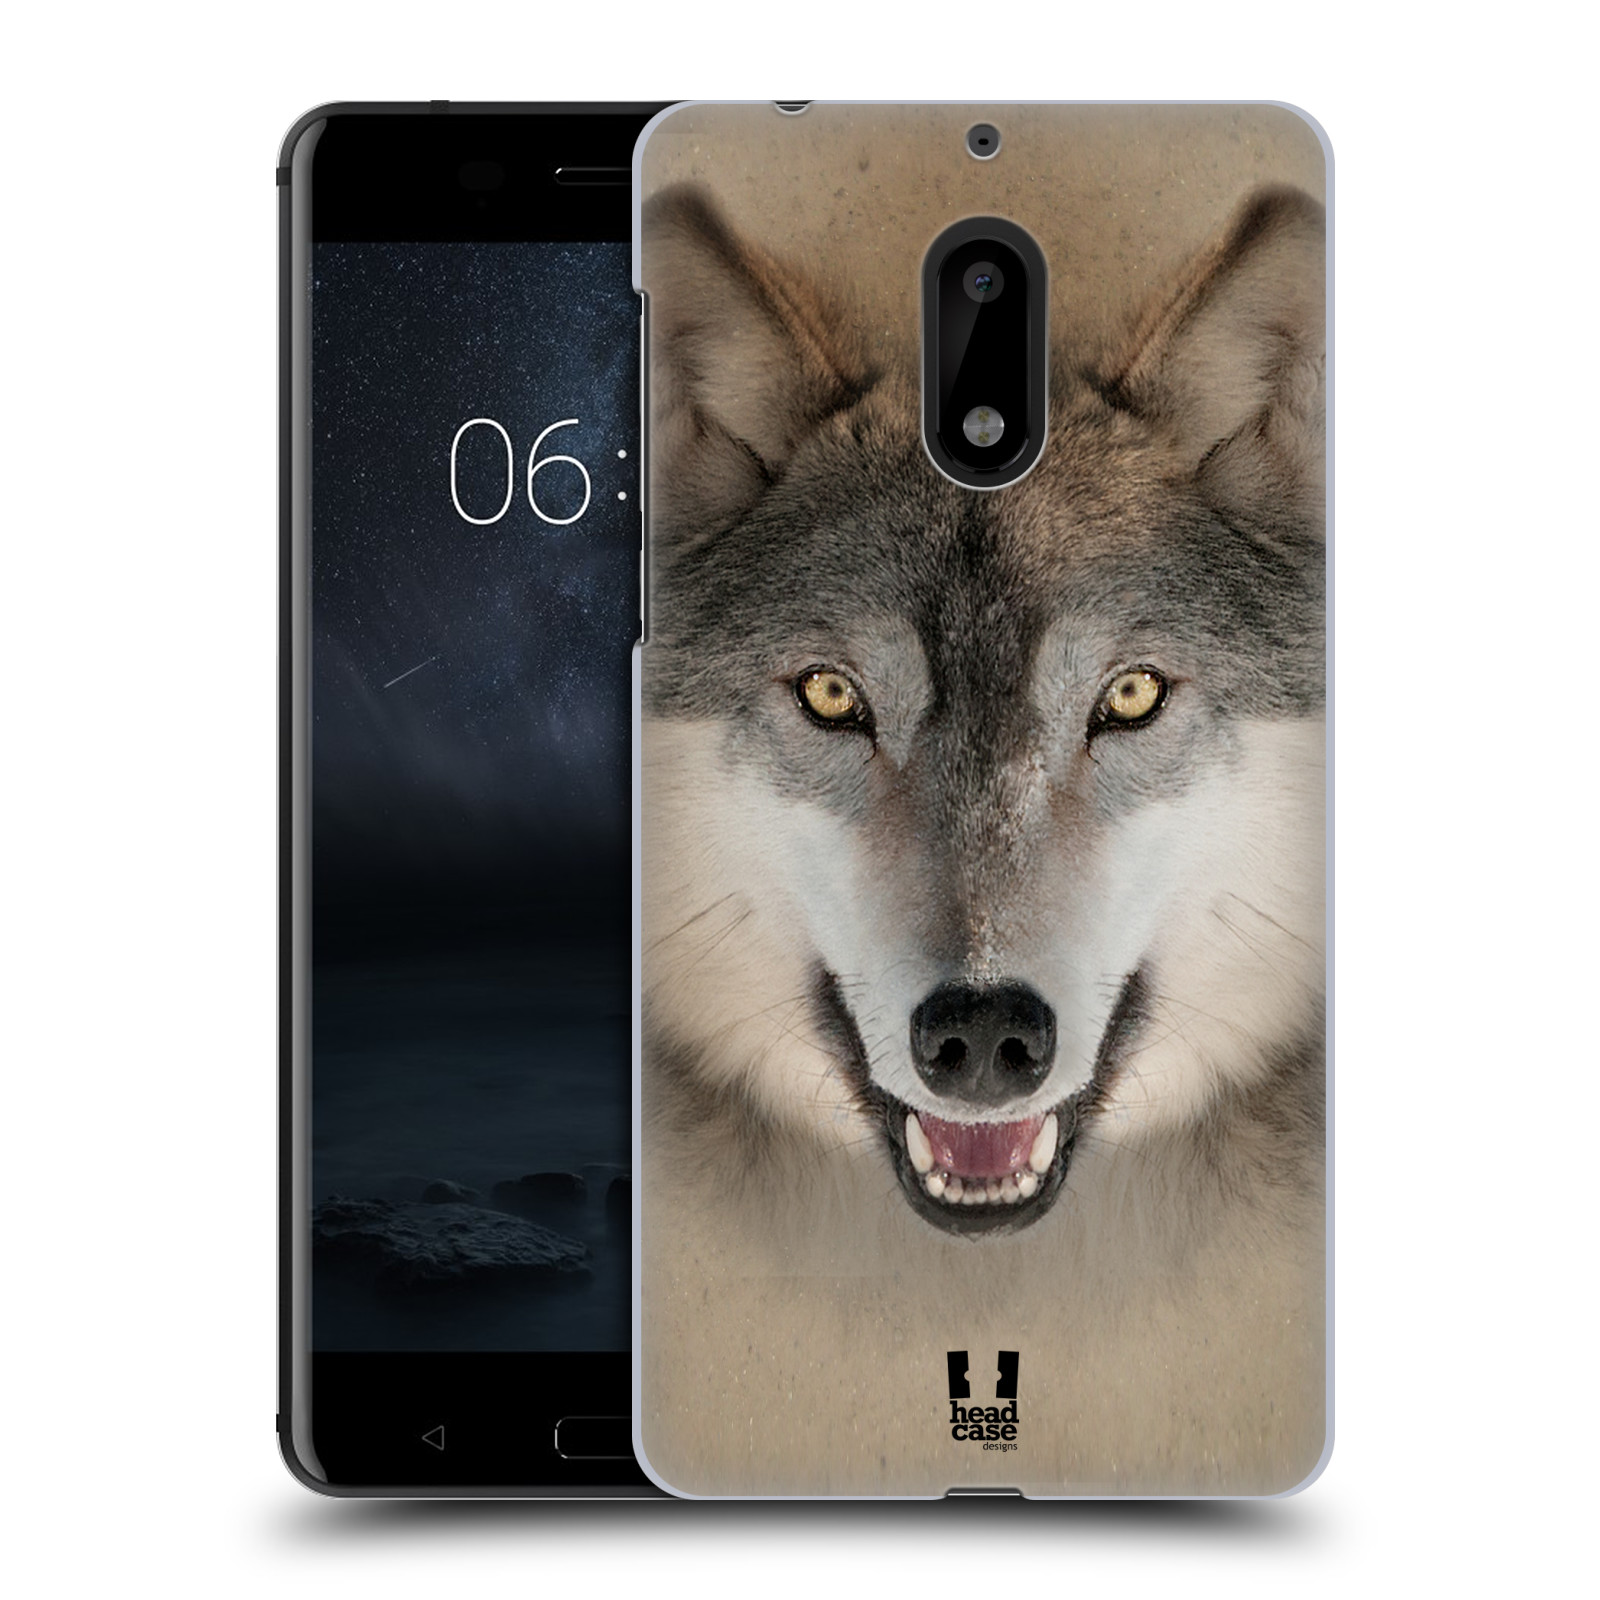 HEAD CASE plastový obal na mobil Nokia 6 vzor Zvířecí tváře 2 vlk šedý